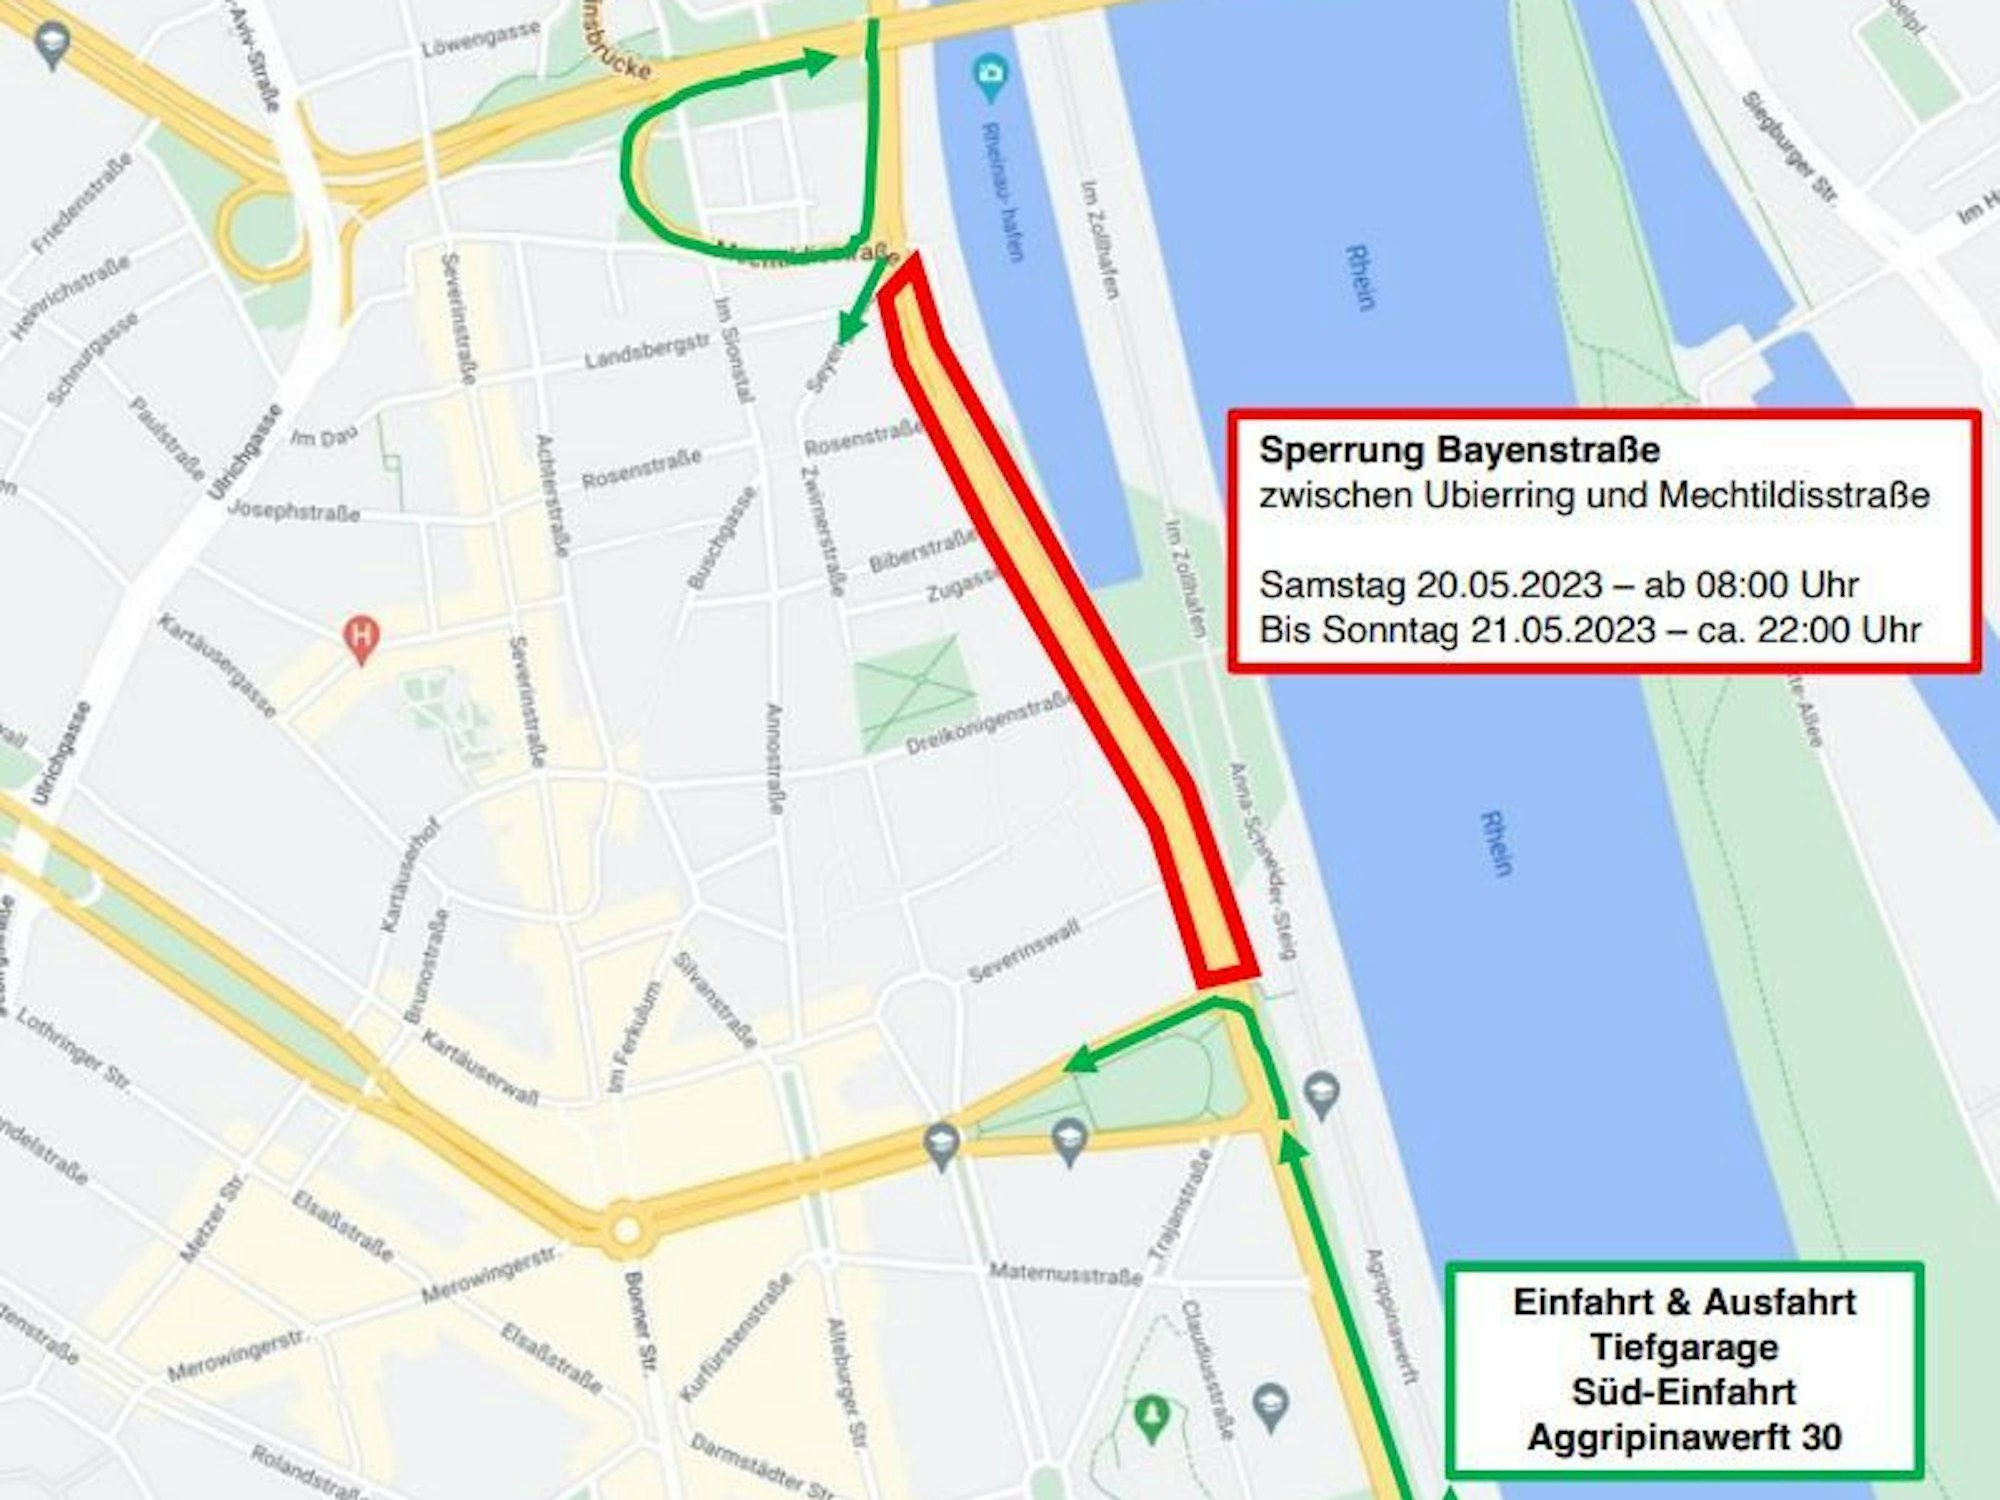 Rund um Köln 2023: Am Rheinauhafen wird die Bayenstraße zwischen Ubierring und Mechtildisstraße von Samstag, 8 Uhr bis Sonntag, 22 Uhr gesperrt sein.